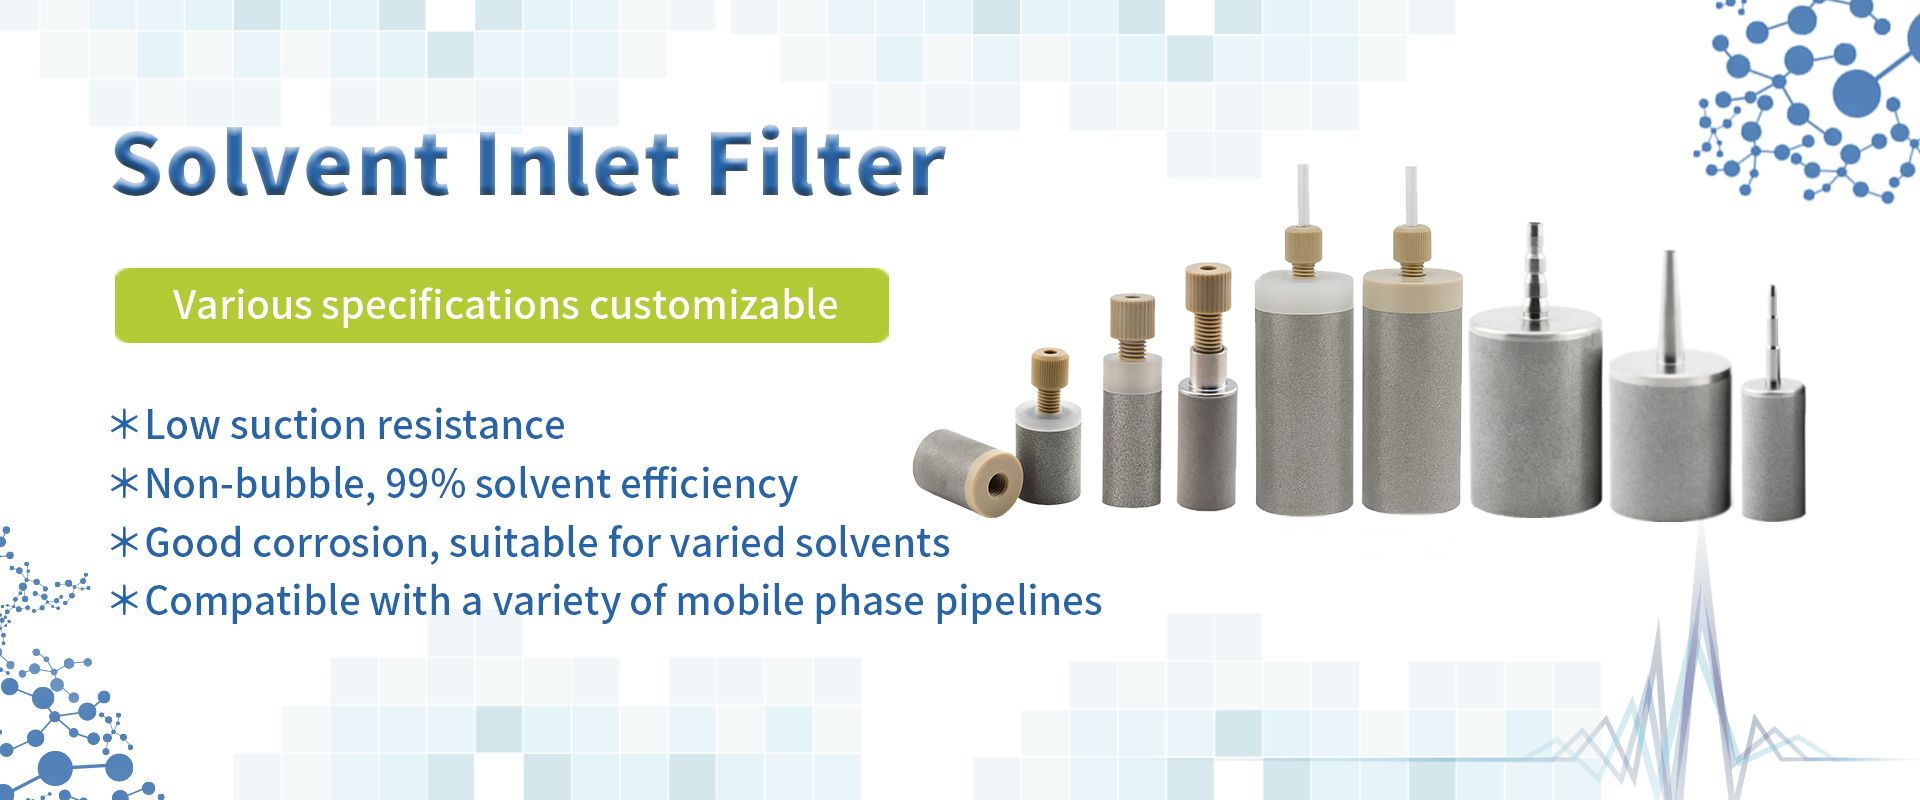 hplc solvent filter supplier banner